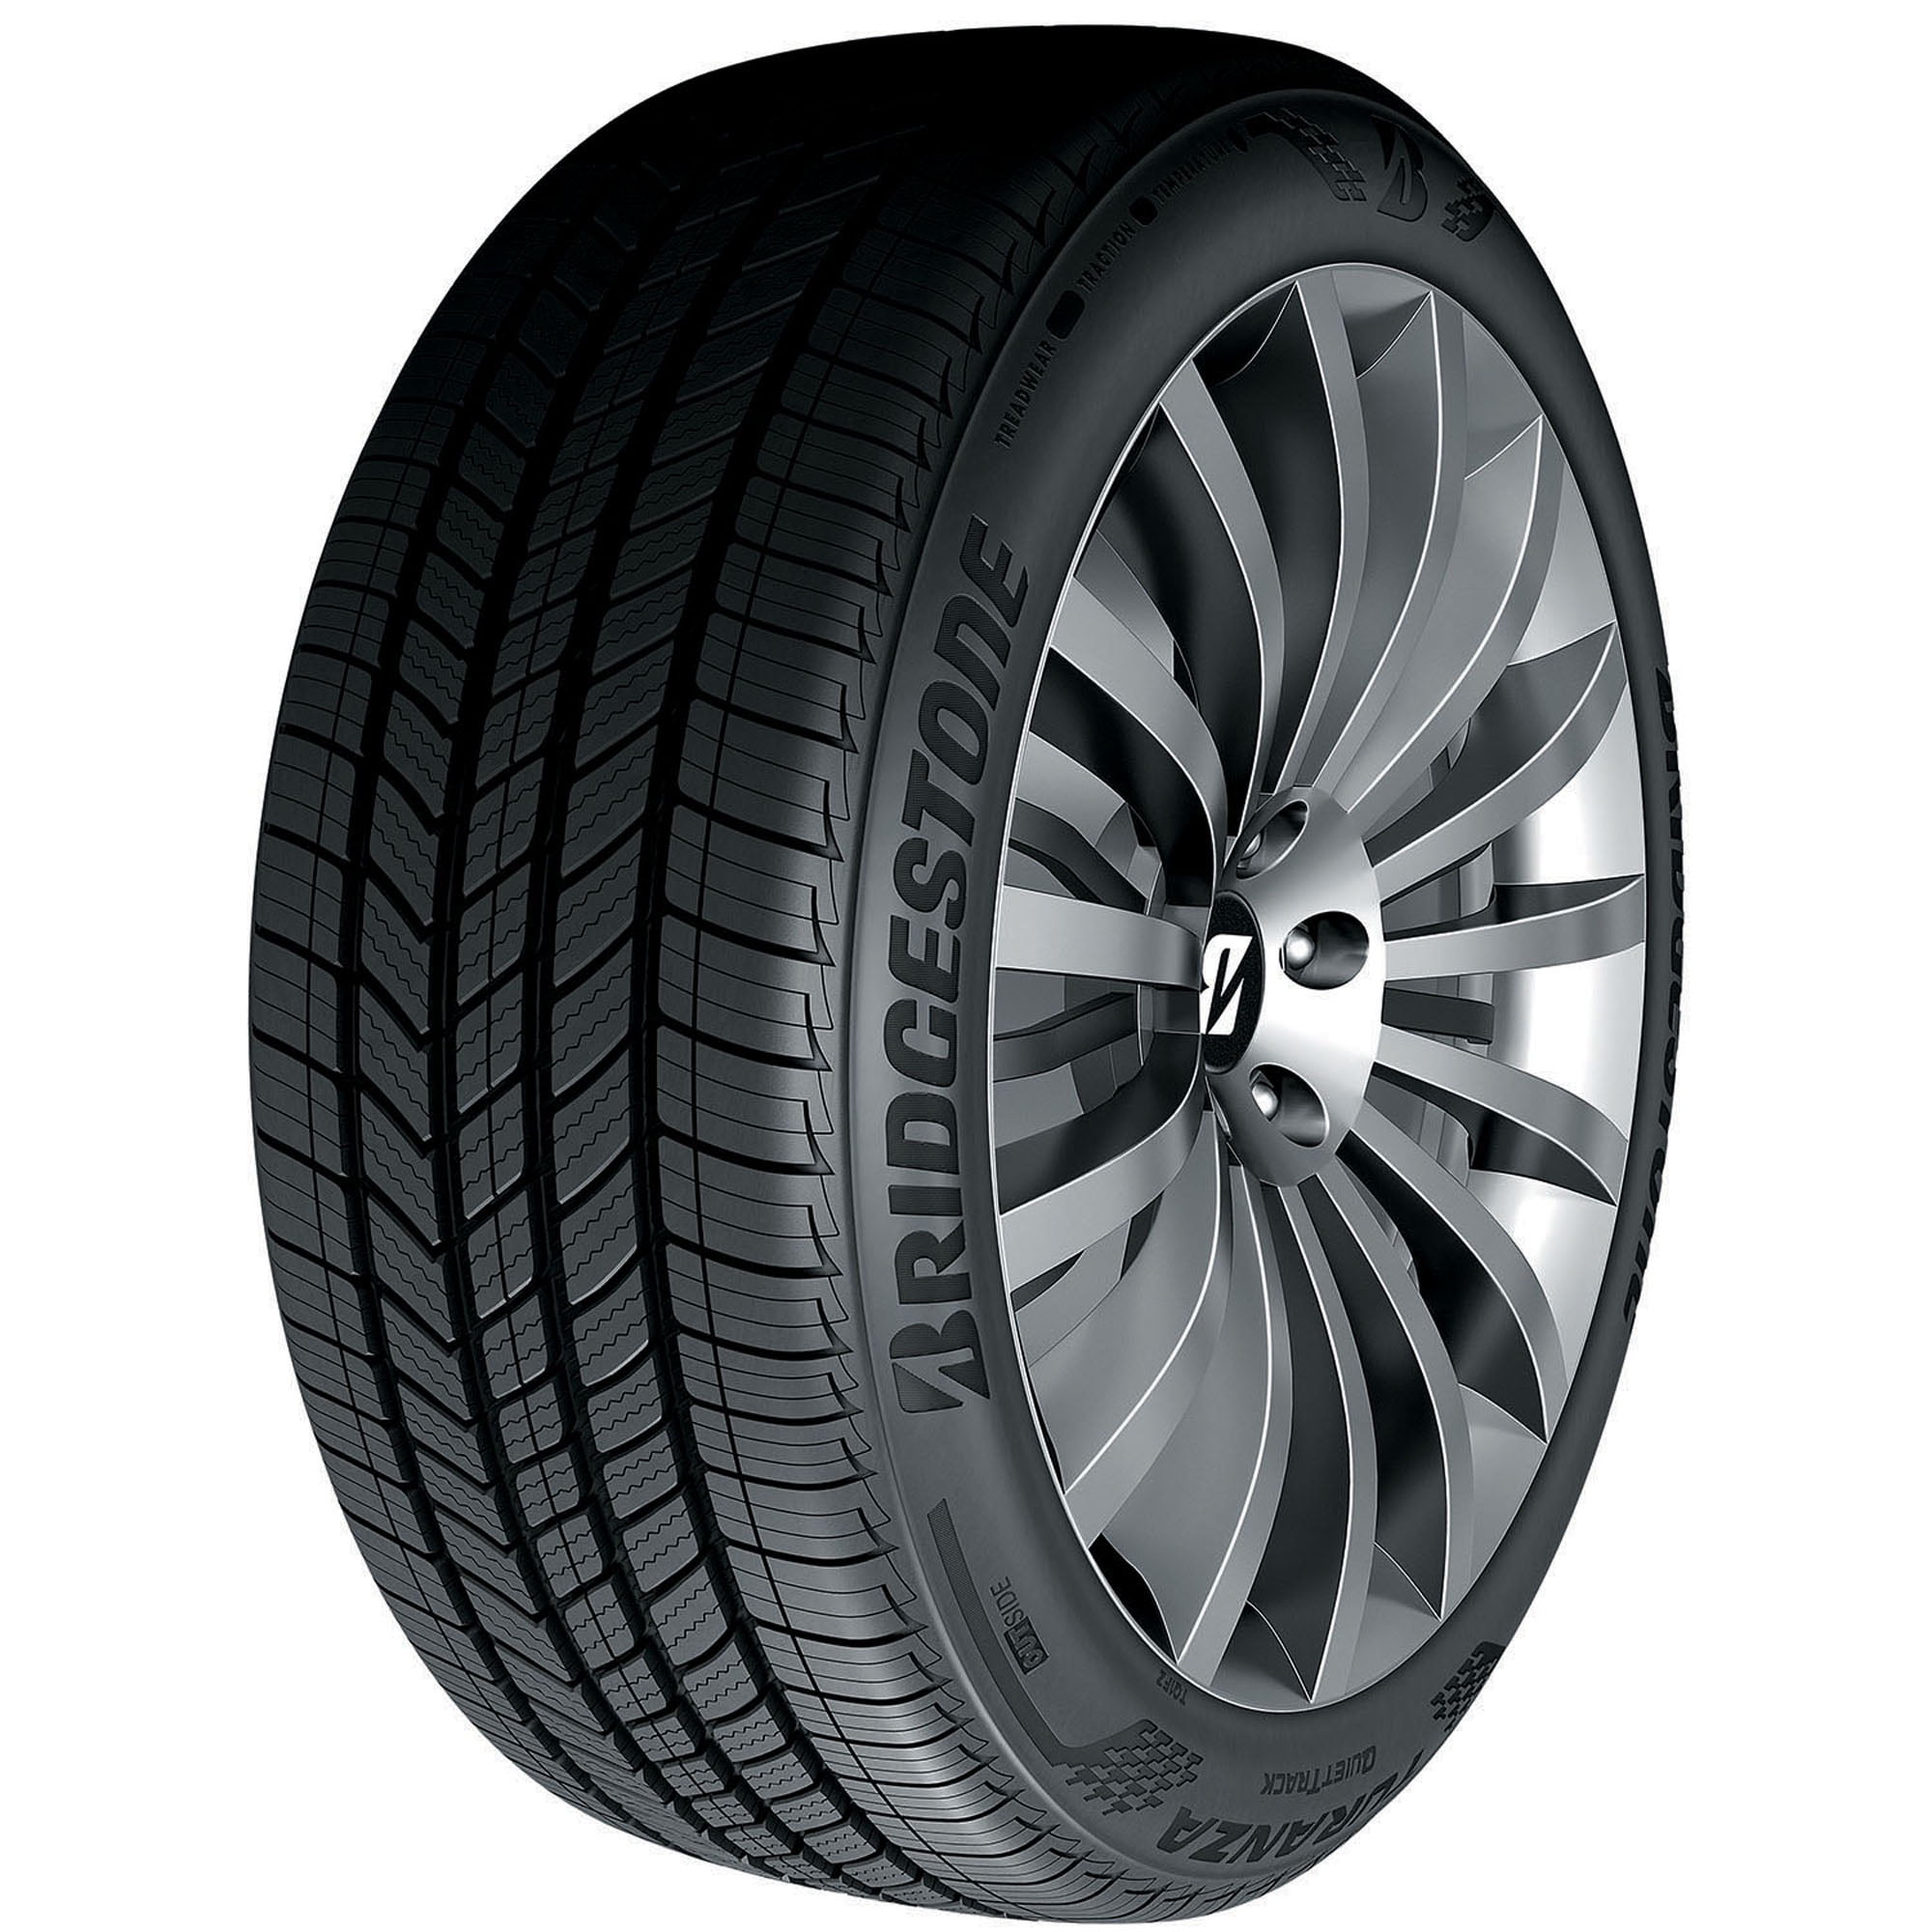 Bridgestone Turanza QuietTrack All Season 205/55R16 91V Passenger Tire